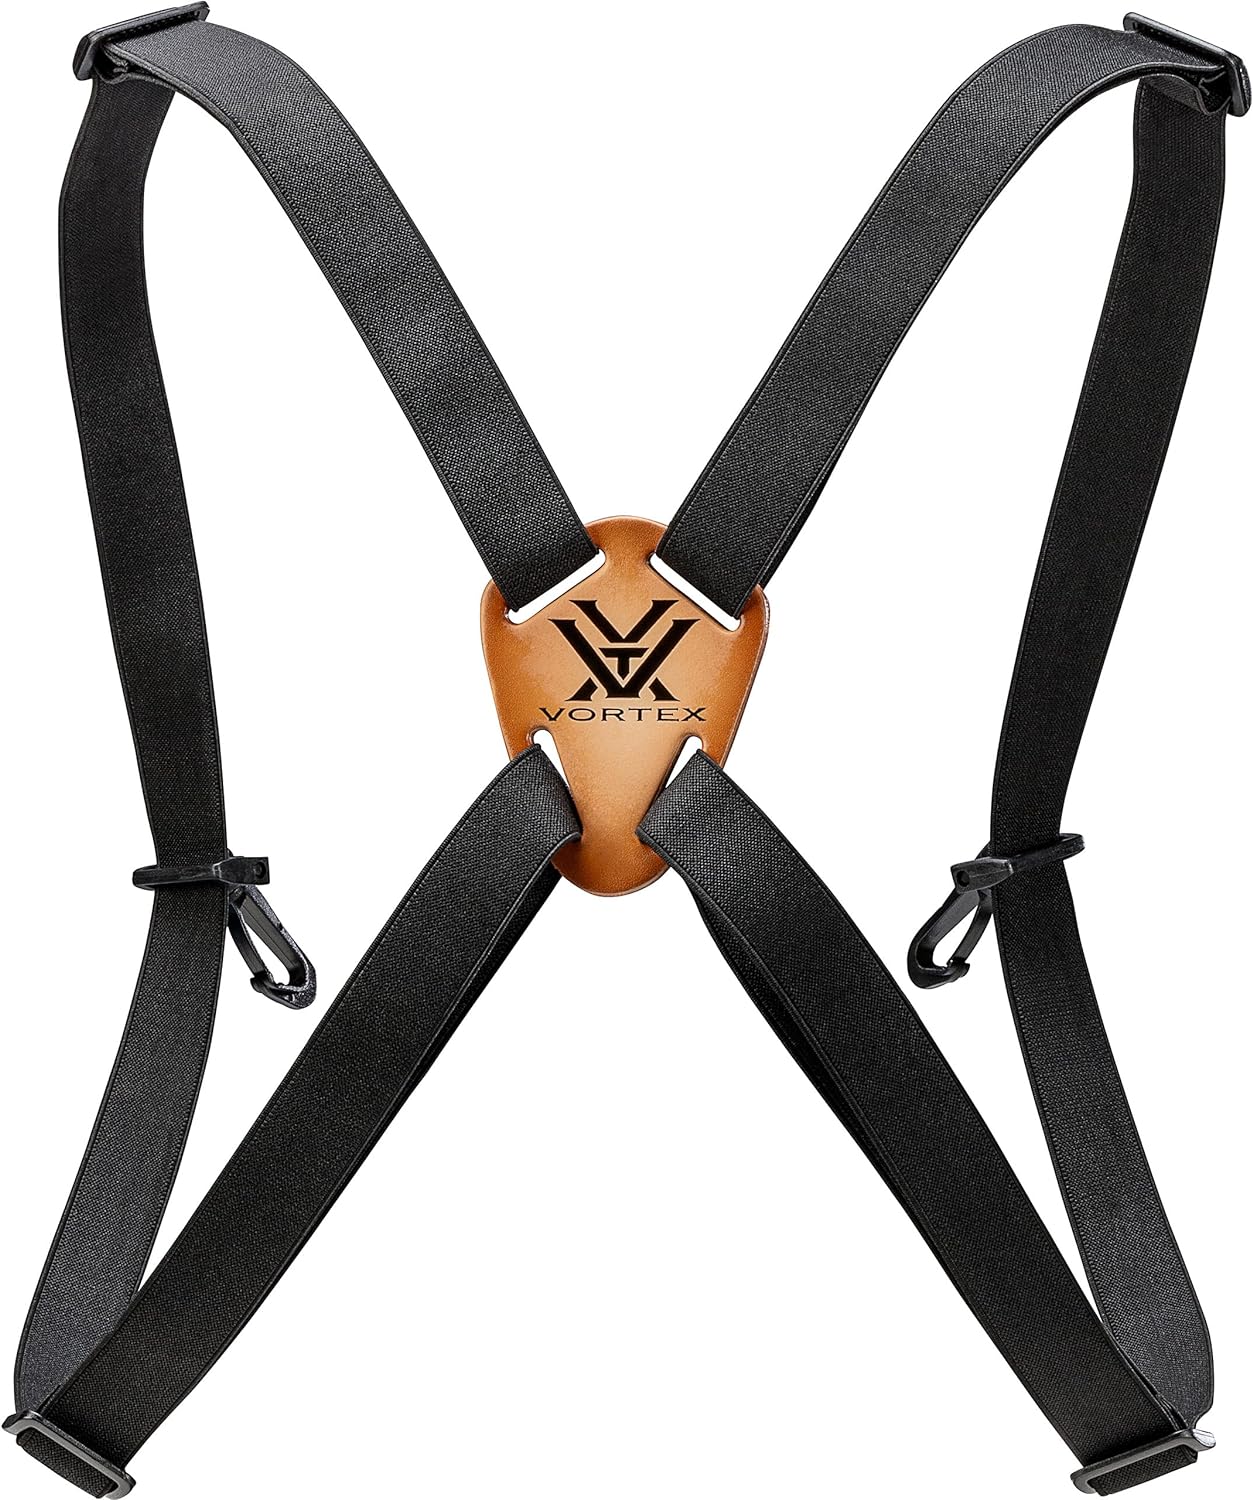 Vortex Binocular Harness Strap Review